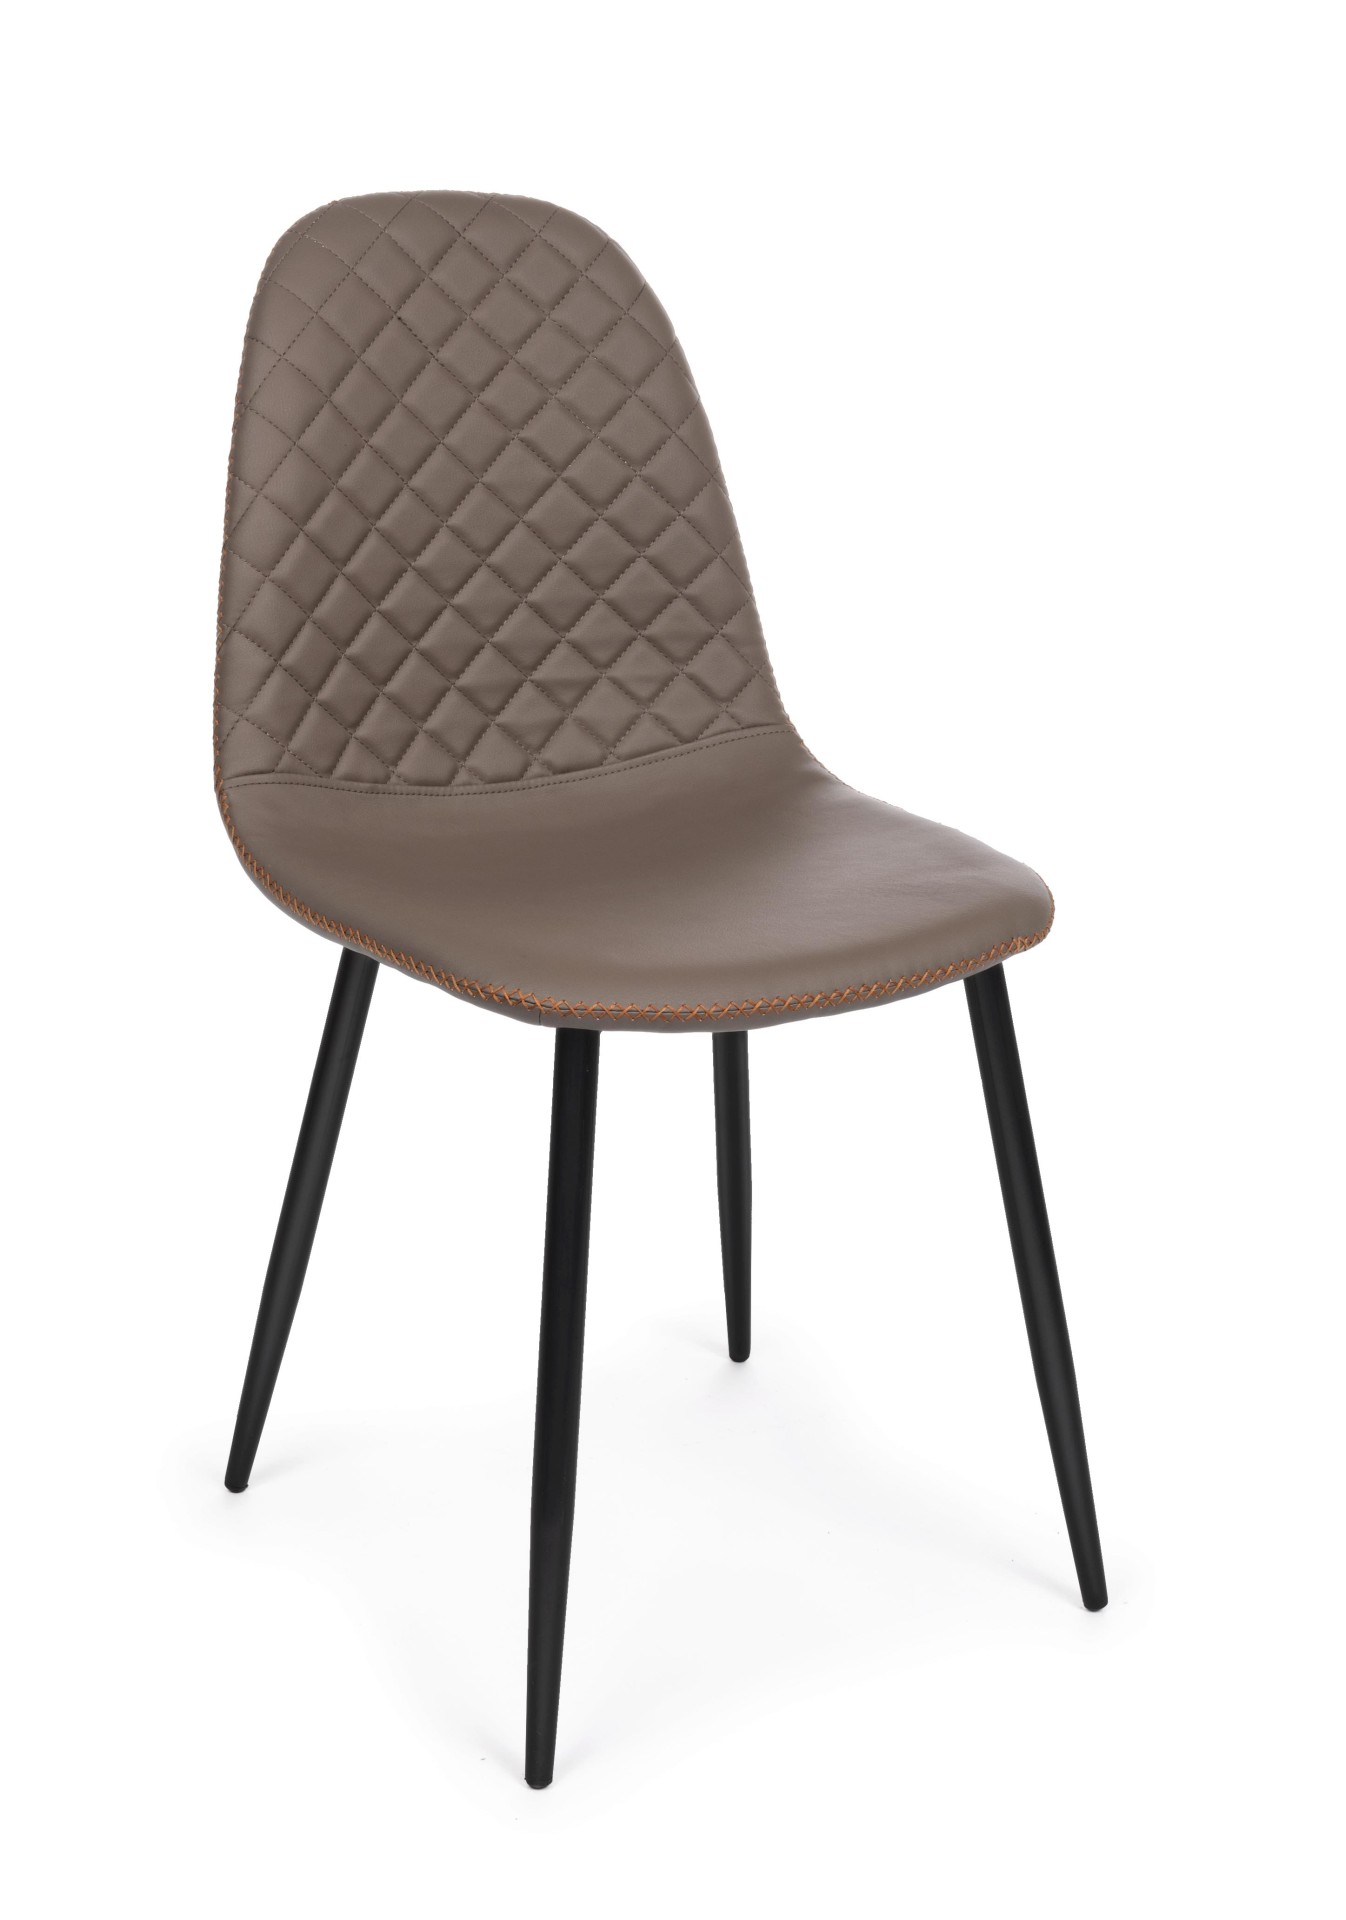 Der Esszimmerstuhl Amanda überzeugt mit seinem modernem Design. Gefertigt wurde der Stuhl aus Kunstleder, welches einen braunen Farbton besitzt. Das Gestell ist aus Metall und ist Schwarz. Die Sitzhöhe beträgt 49 cm.